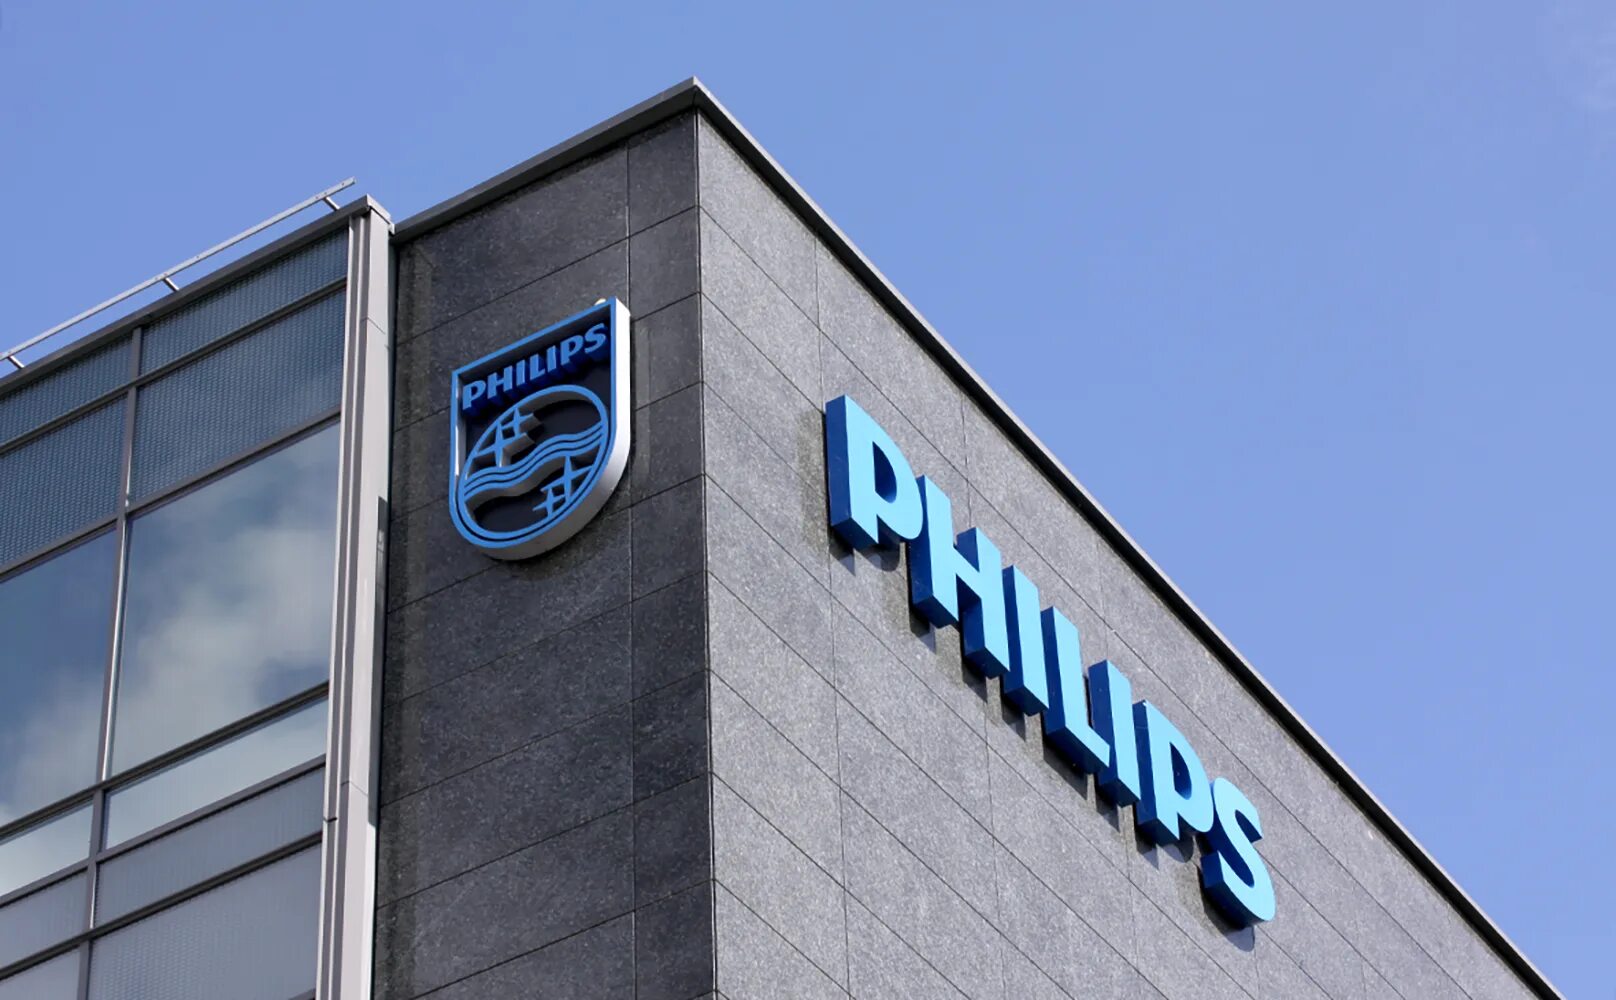 Где находится филипс. Компания Филипс Нидерланды. Royal Philips Electronics. Philips штаб квартира. Филипс здание.